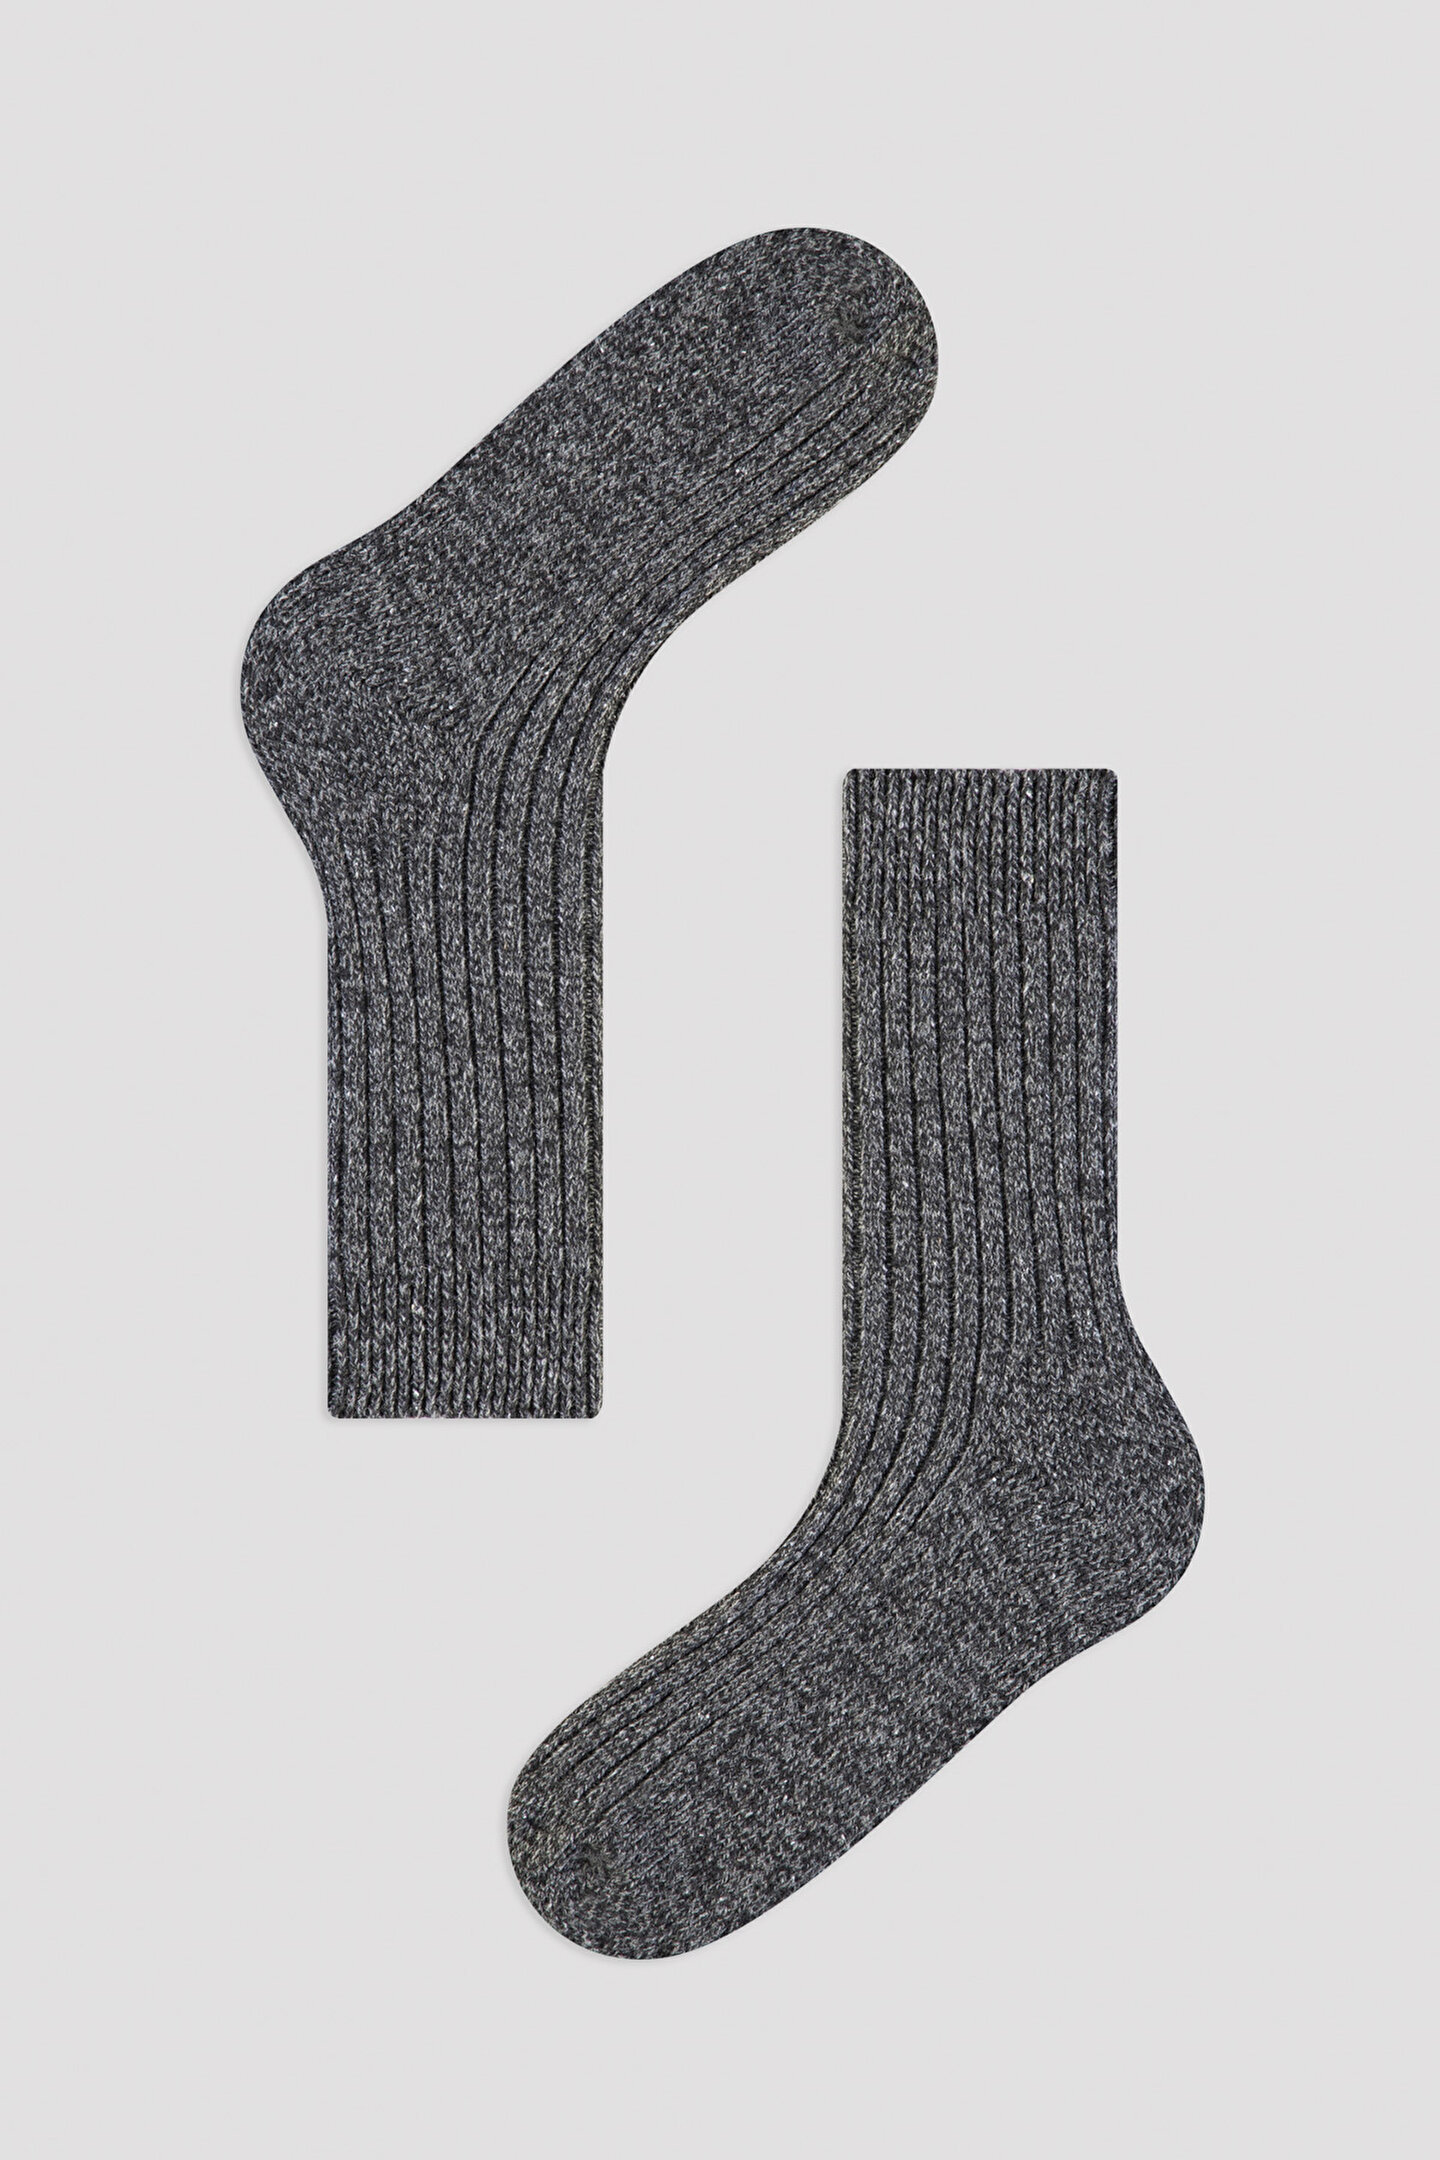 E.Light Grey Socks - 1